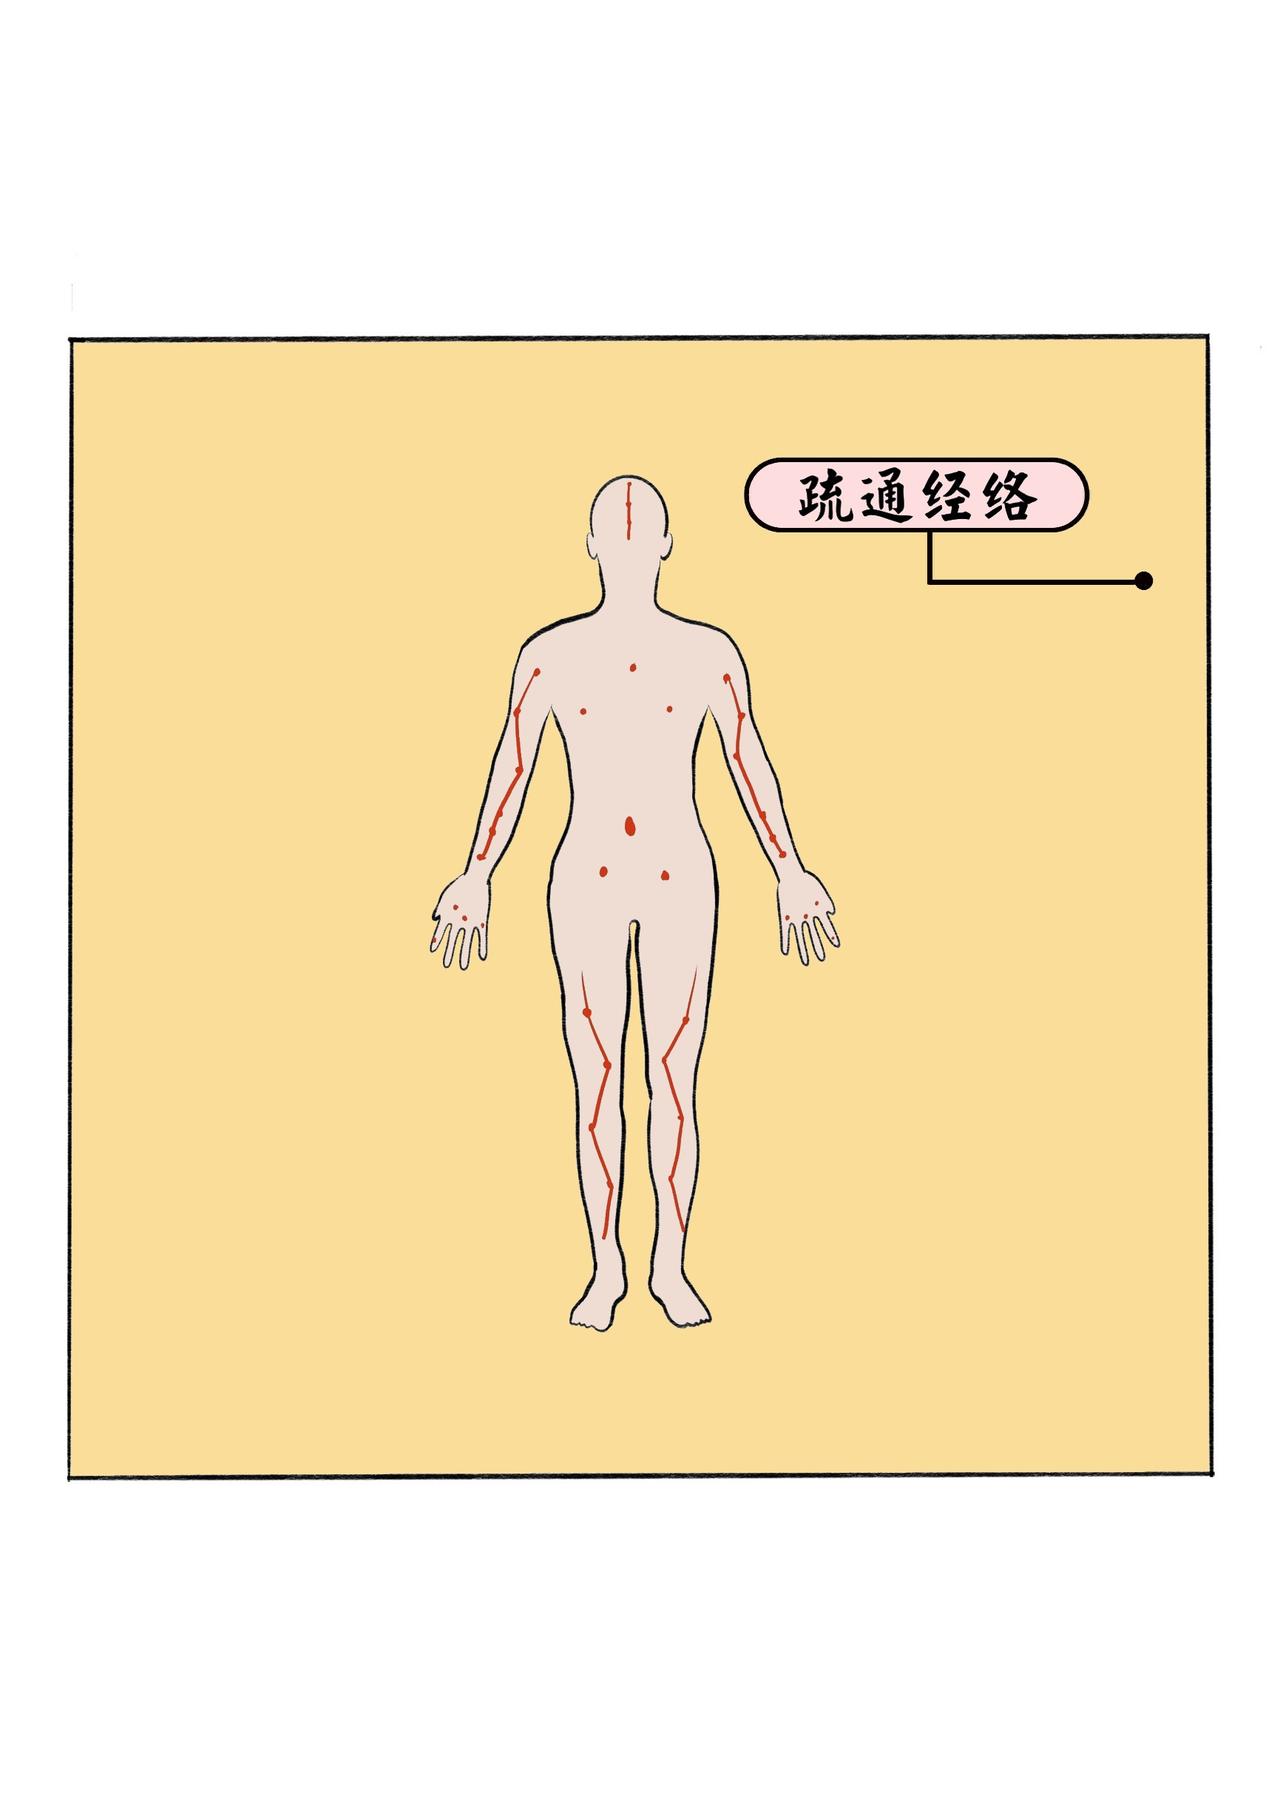 中醫入門之鍼灸趣味科普漫畫 - 扁鵲妙手起死回生 - 6